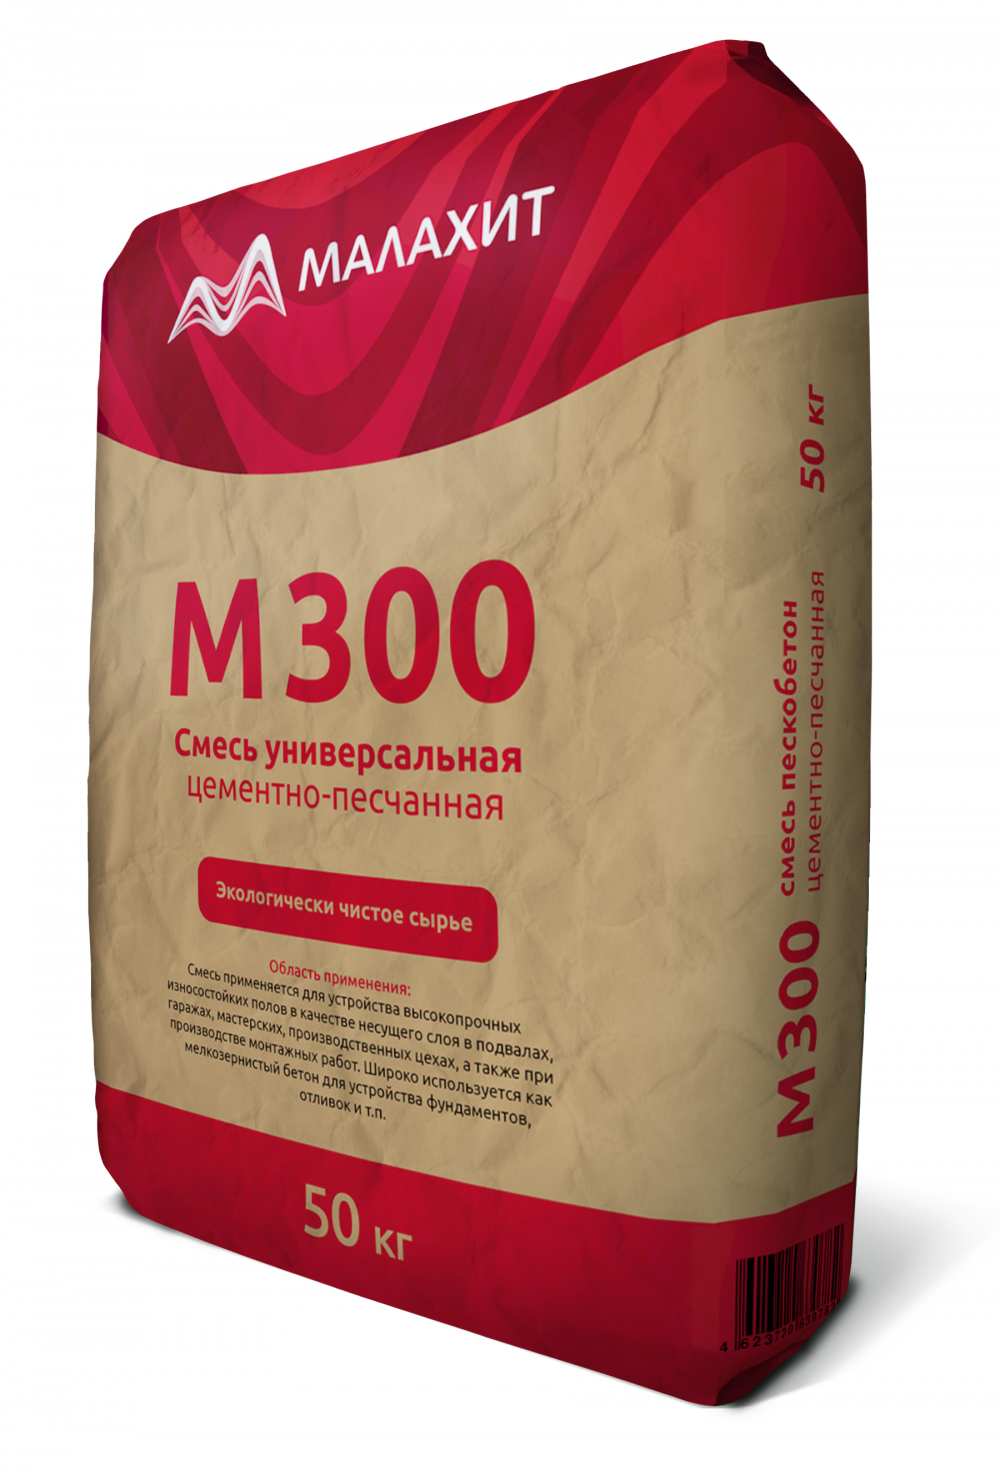 Сухая смесь М300 «Малахит» пескобетон ГОСТ 31357-2007, 50кг